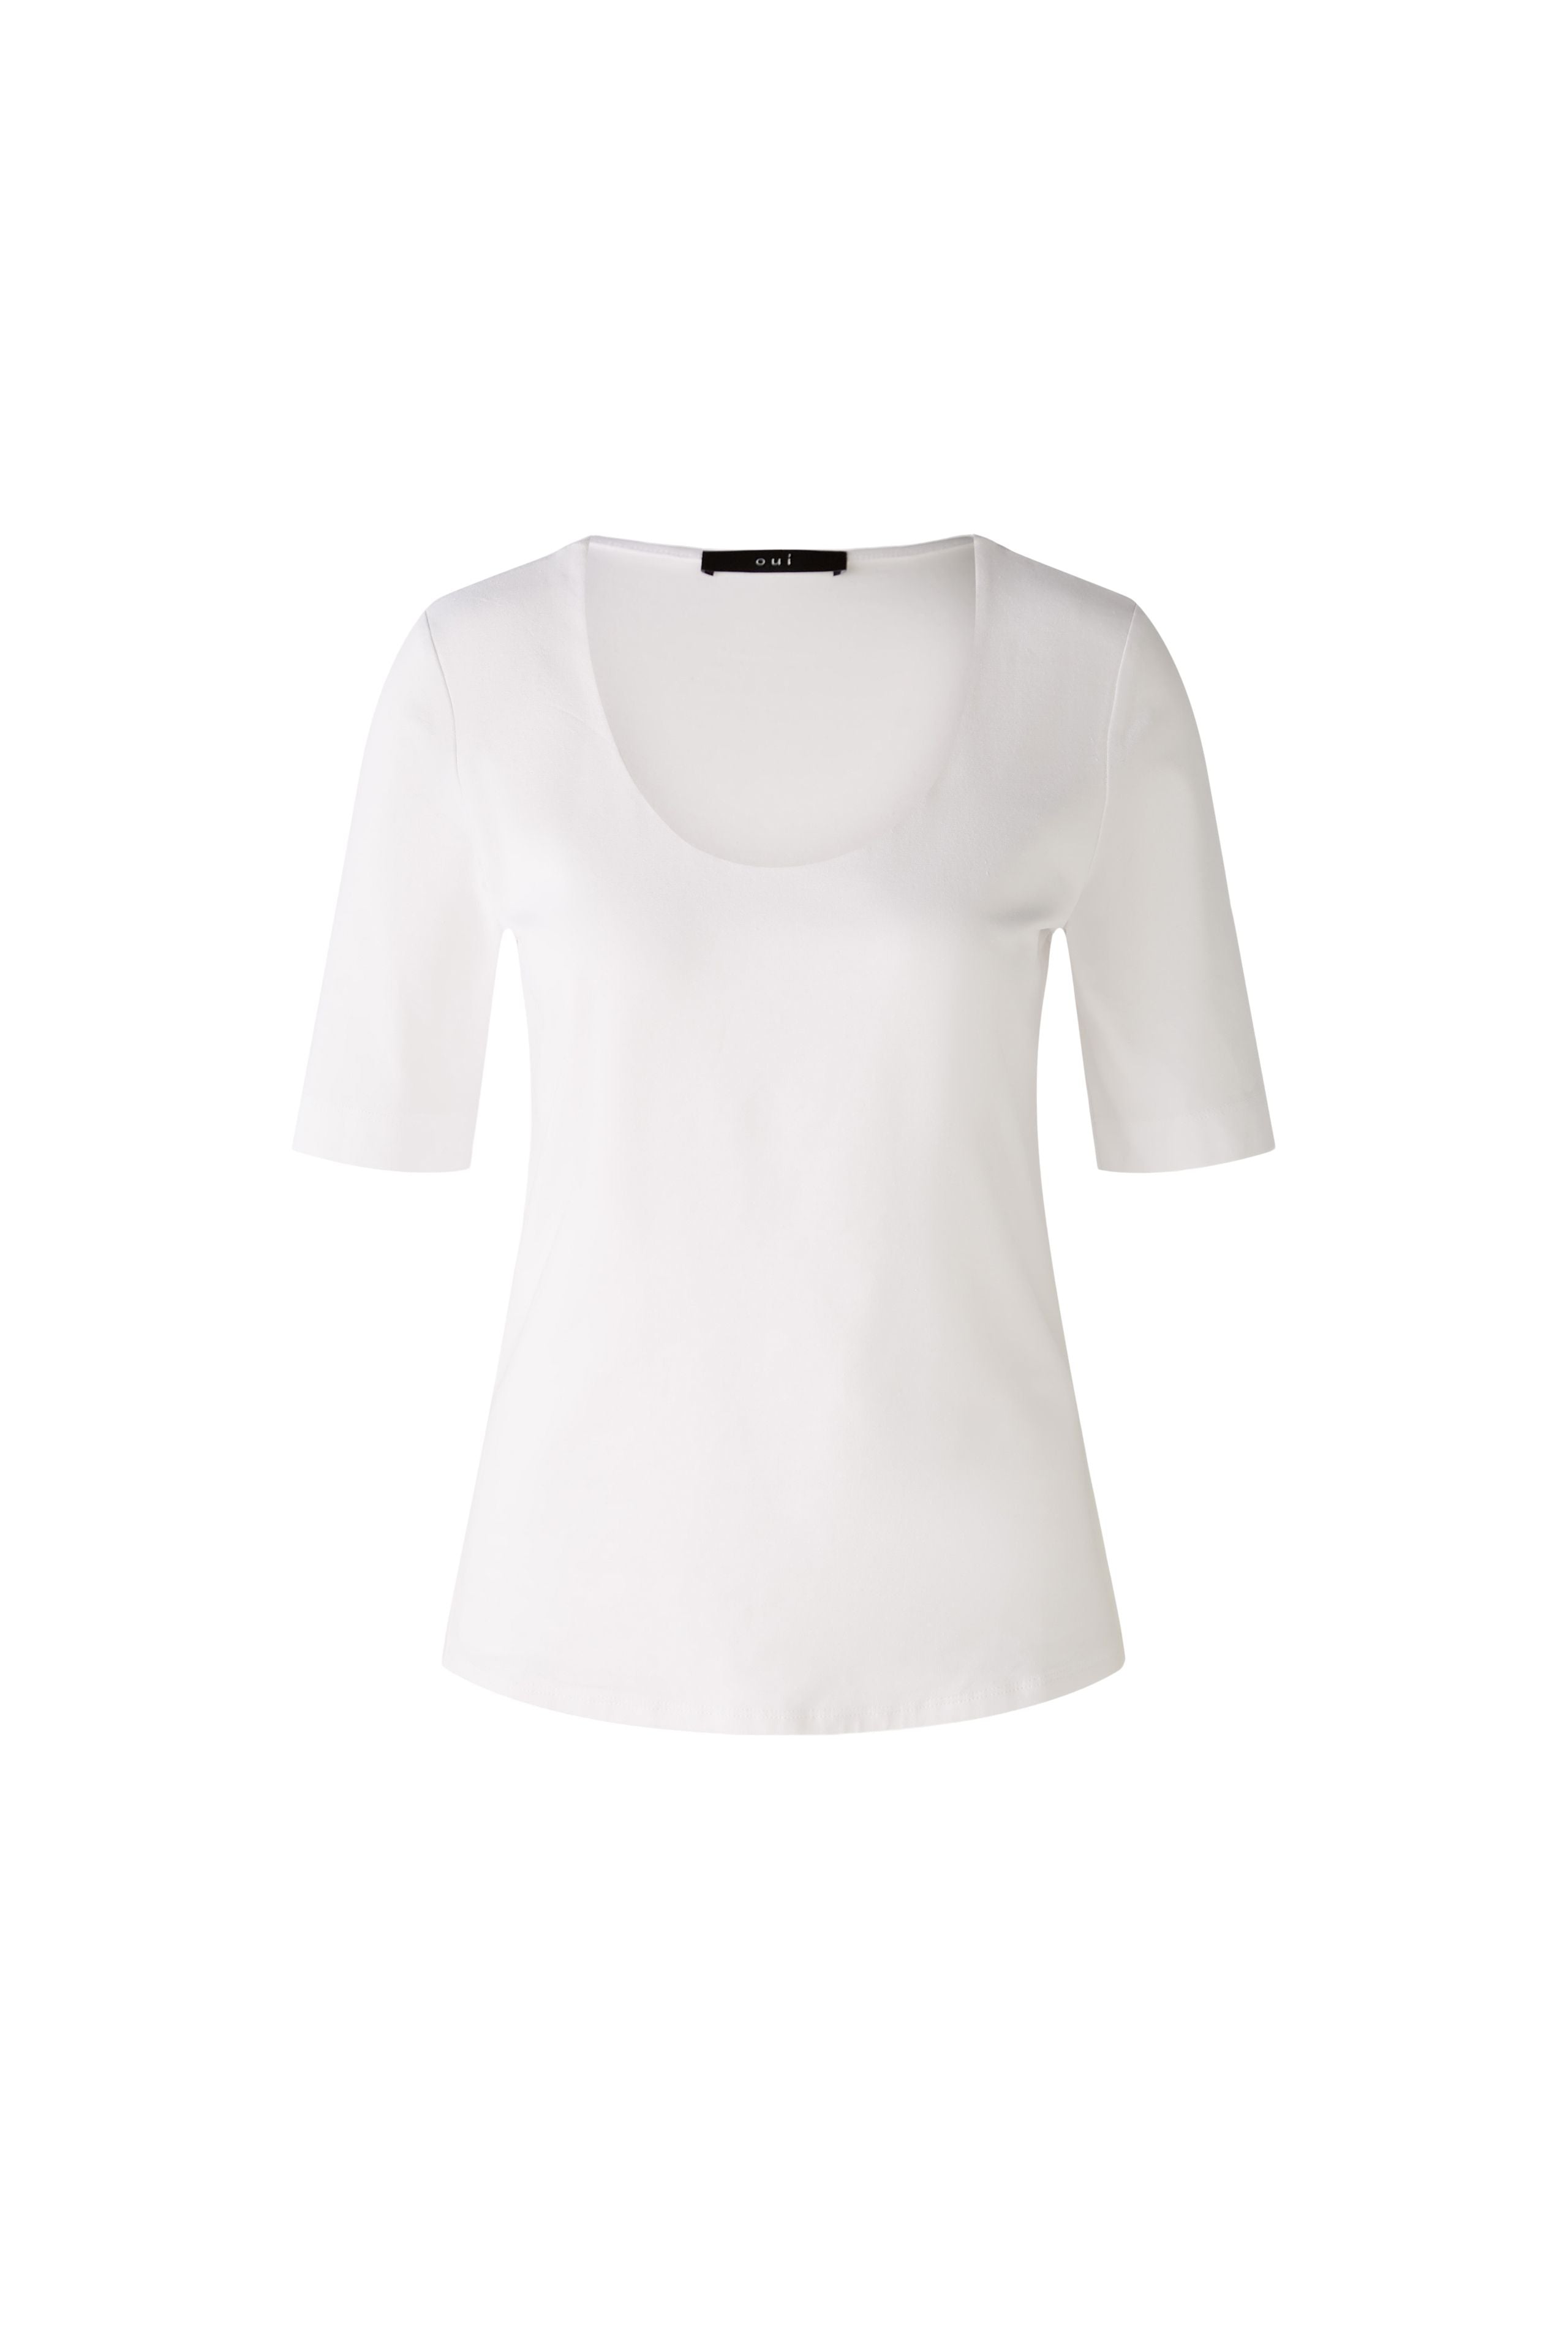 White T-Shirt 87367